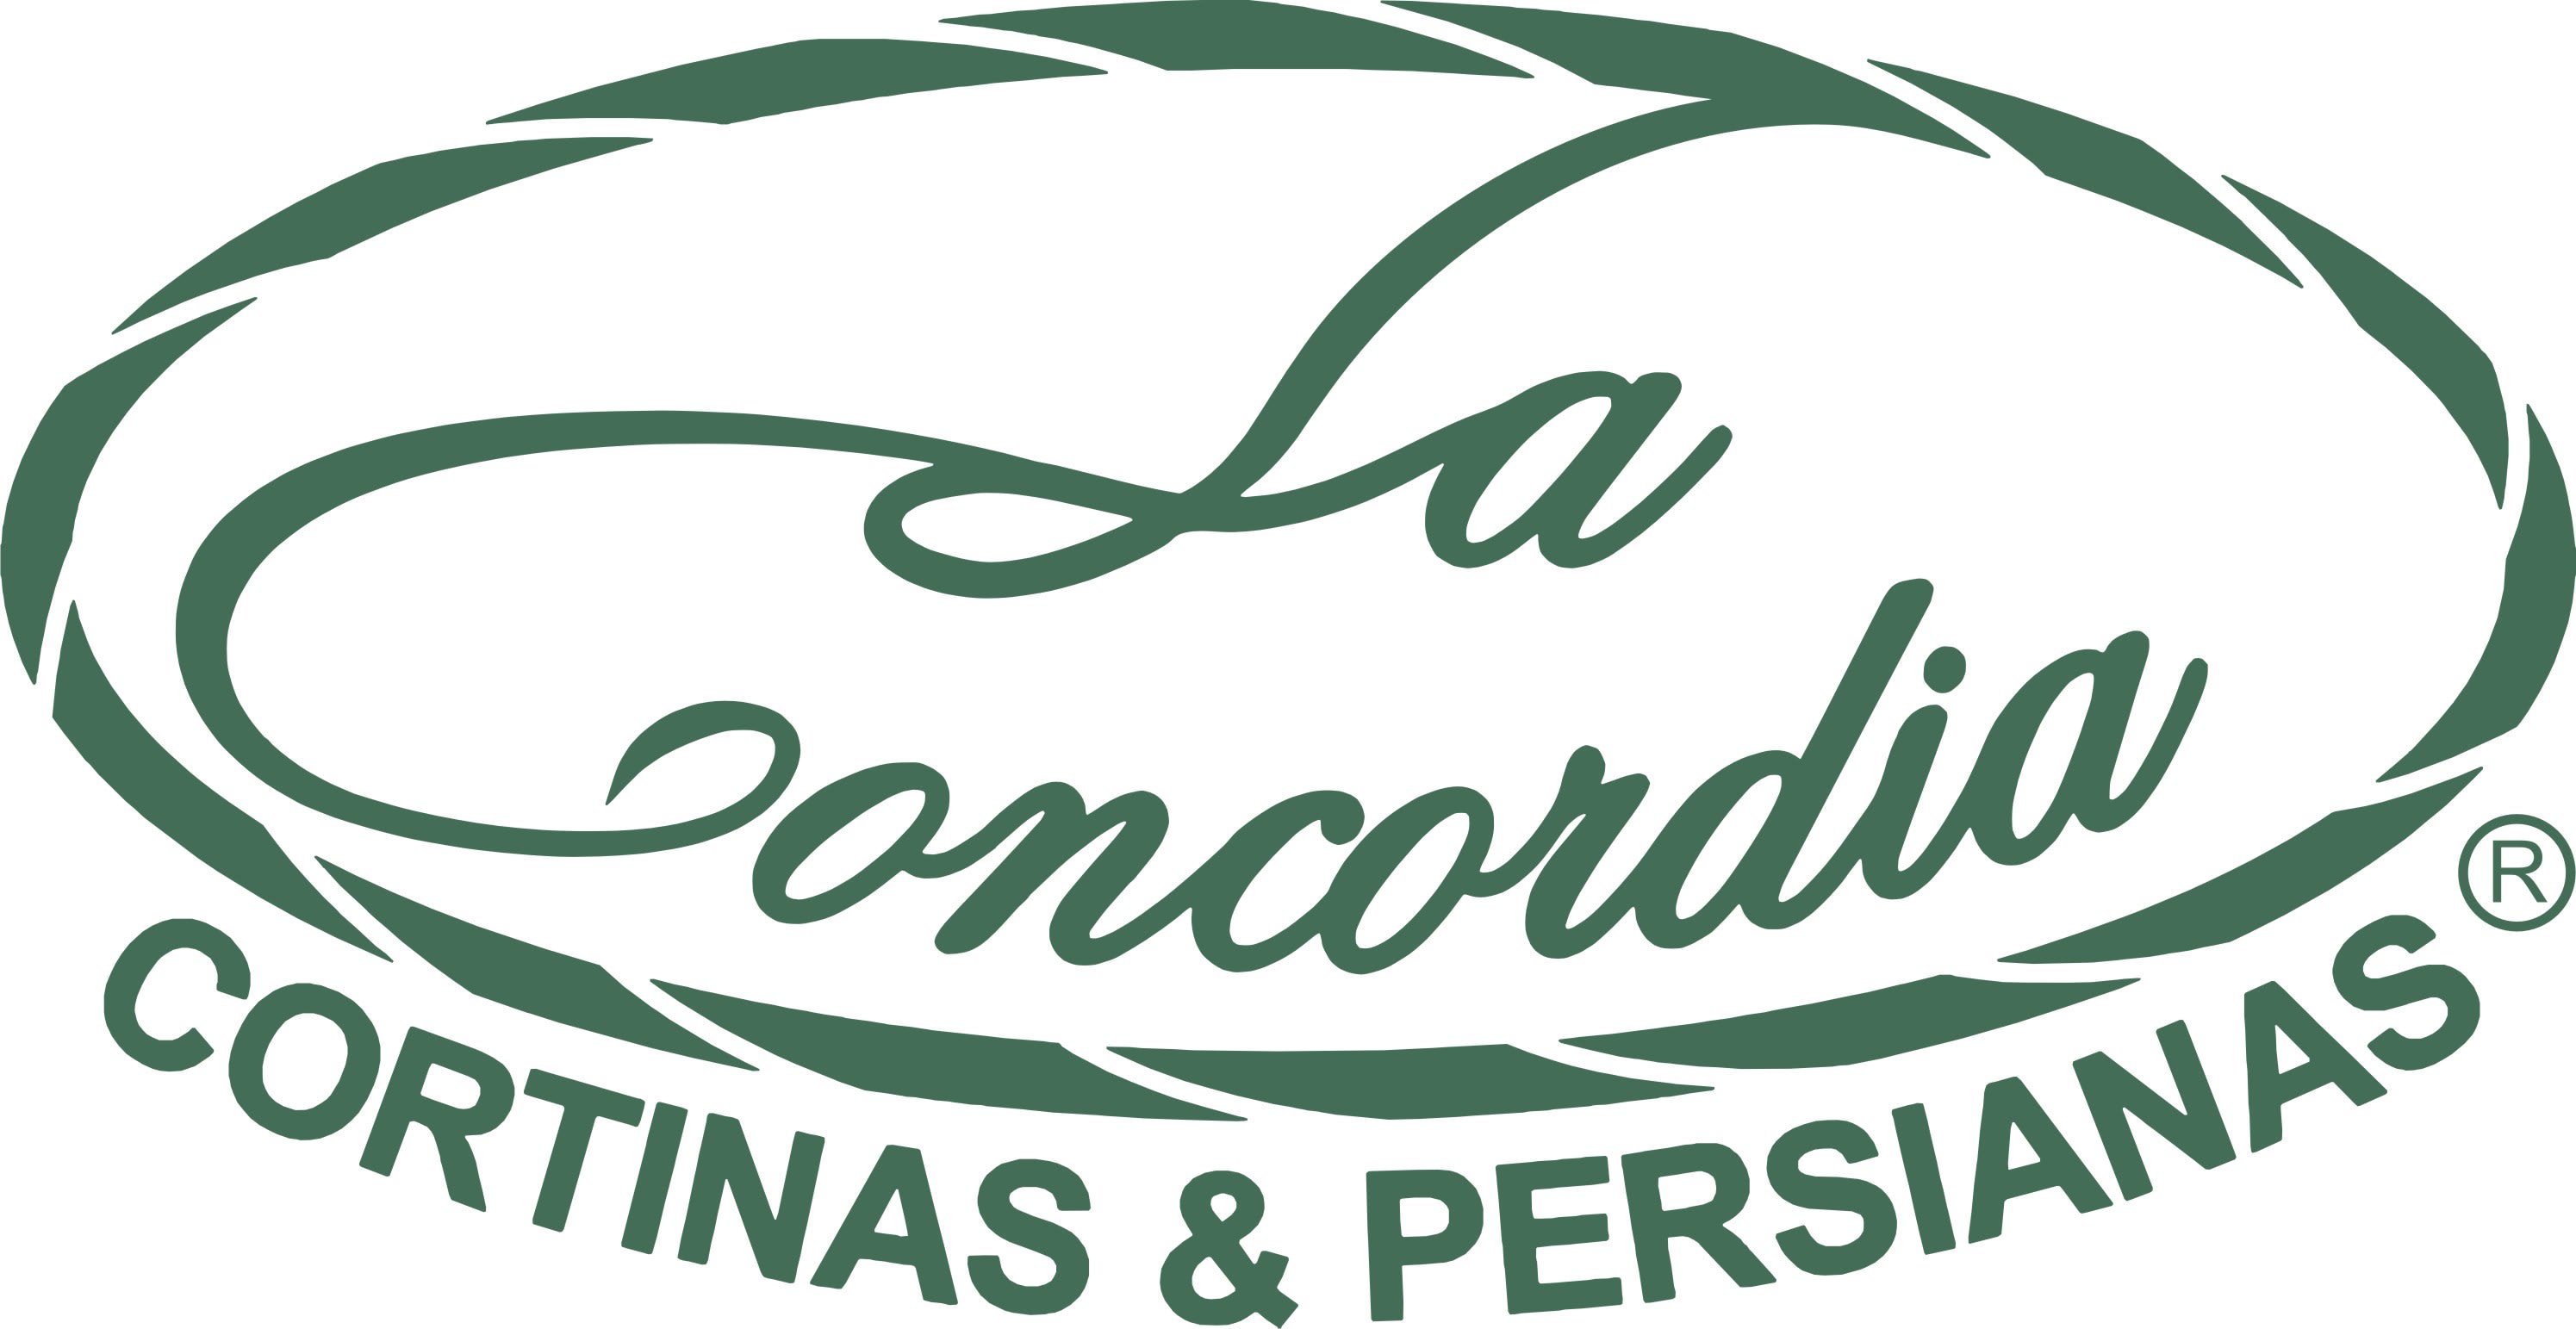 La Concordia Cortinas & Persianas